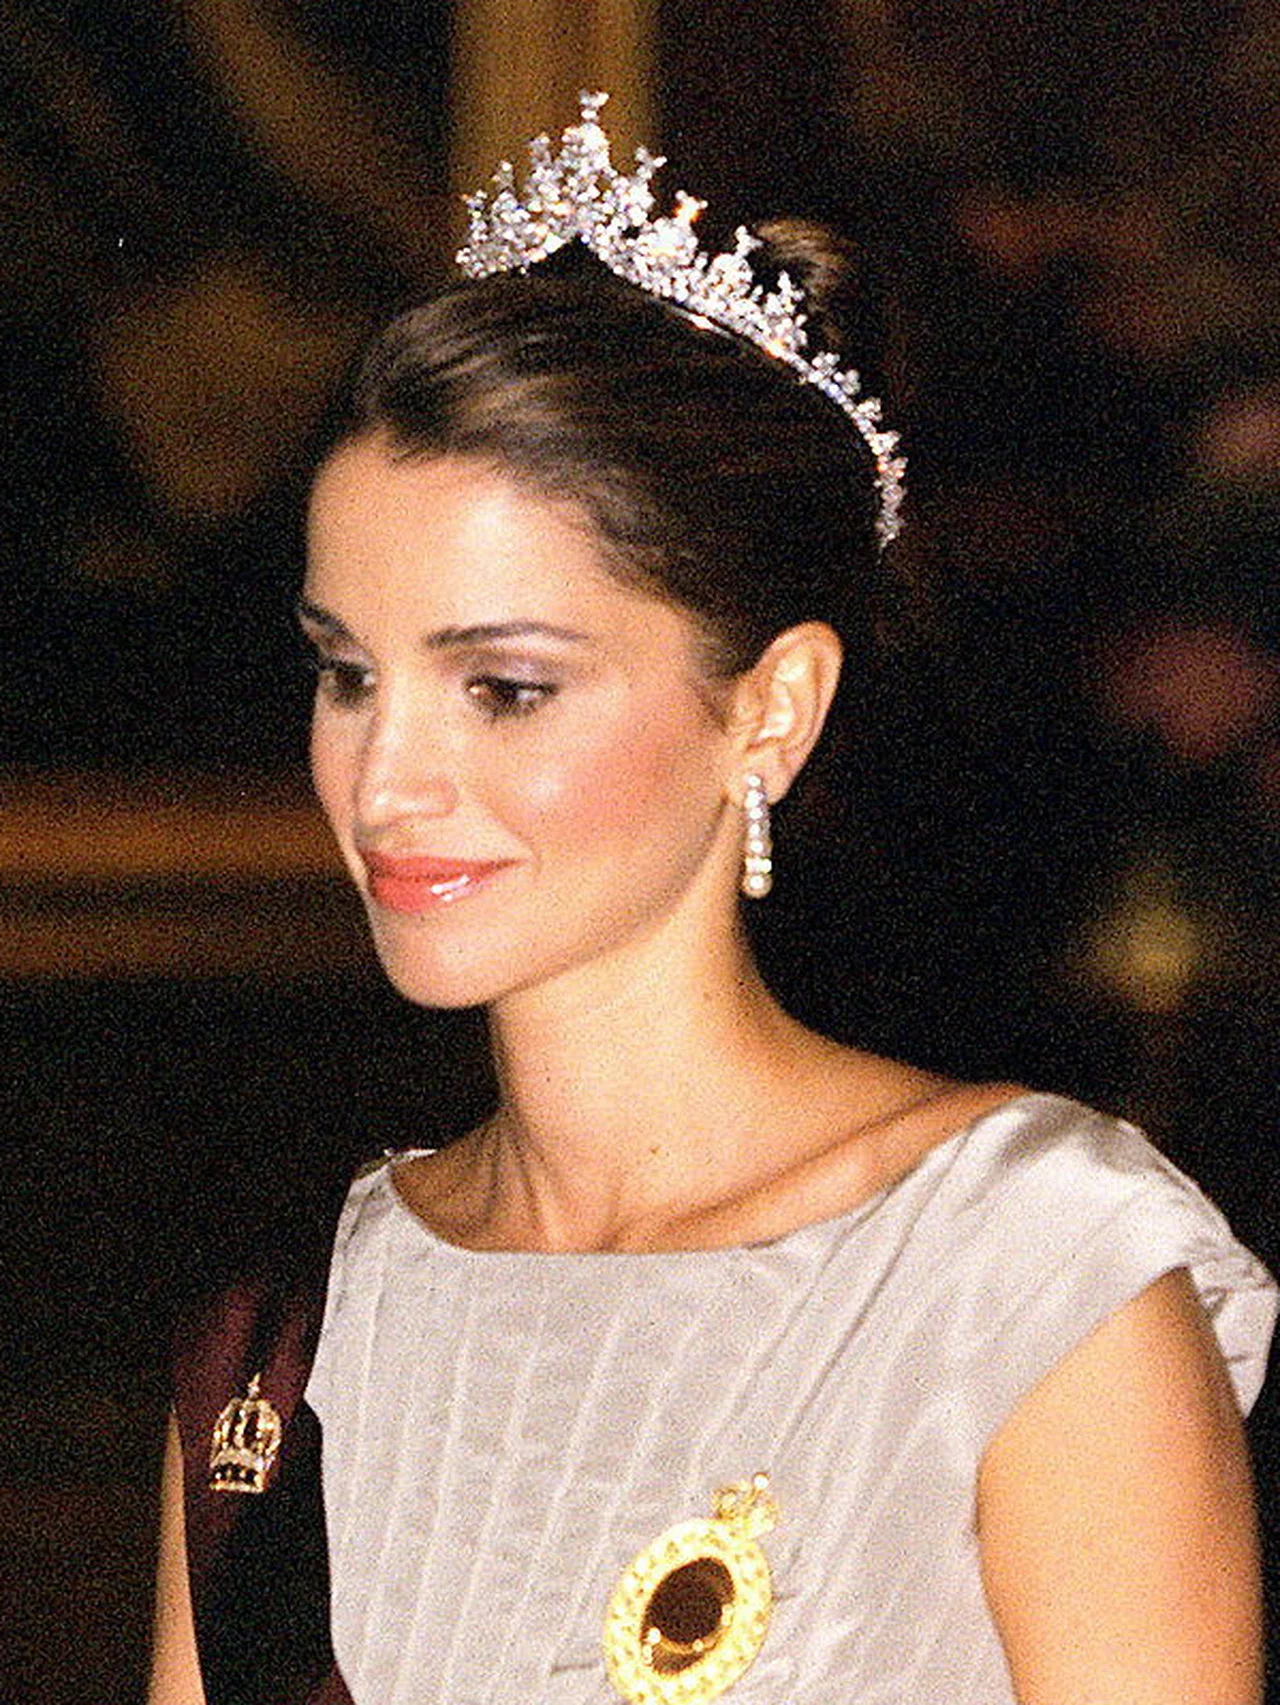 ヨルダンのイマン王女、結婚式を前に母ラーニア妃のティアラを着用した美麗ショットを公開